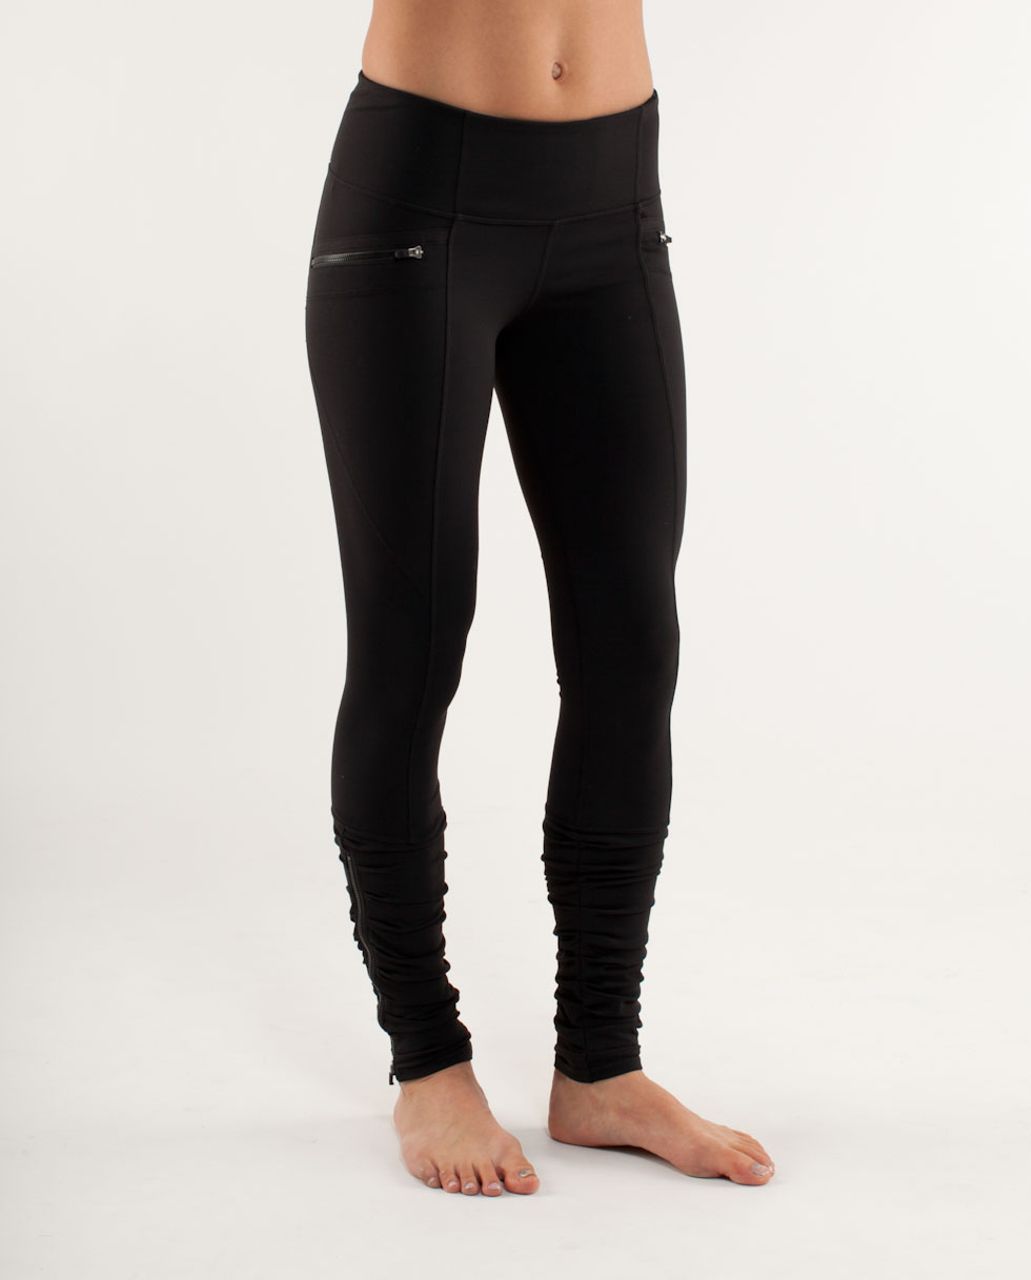 lululemon zip pocket leggings, OFF 76%,Buy!